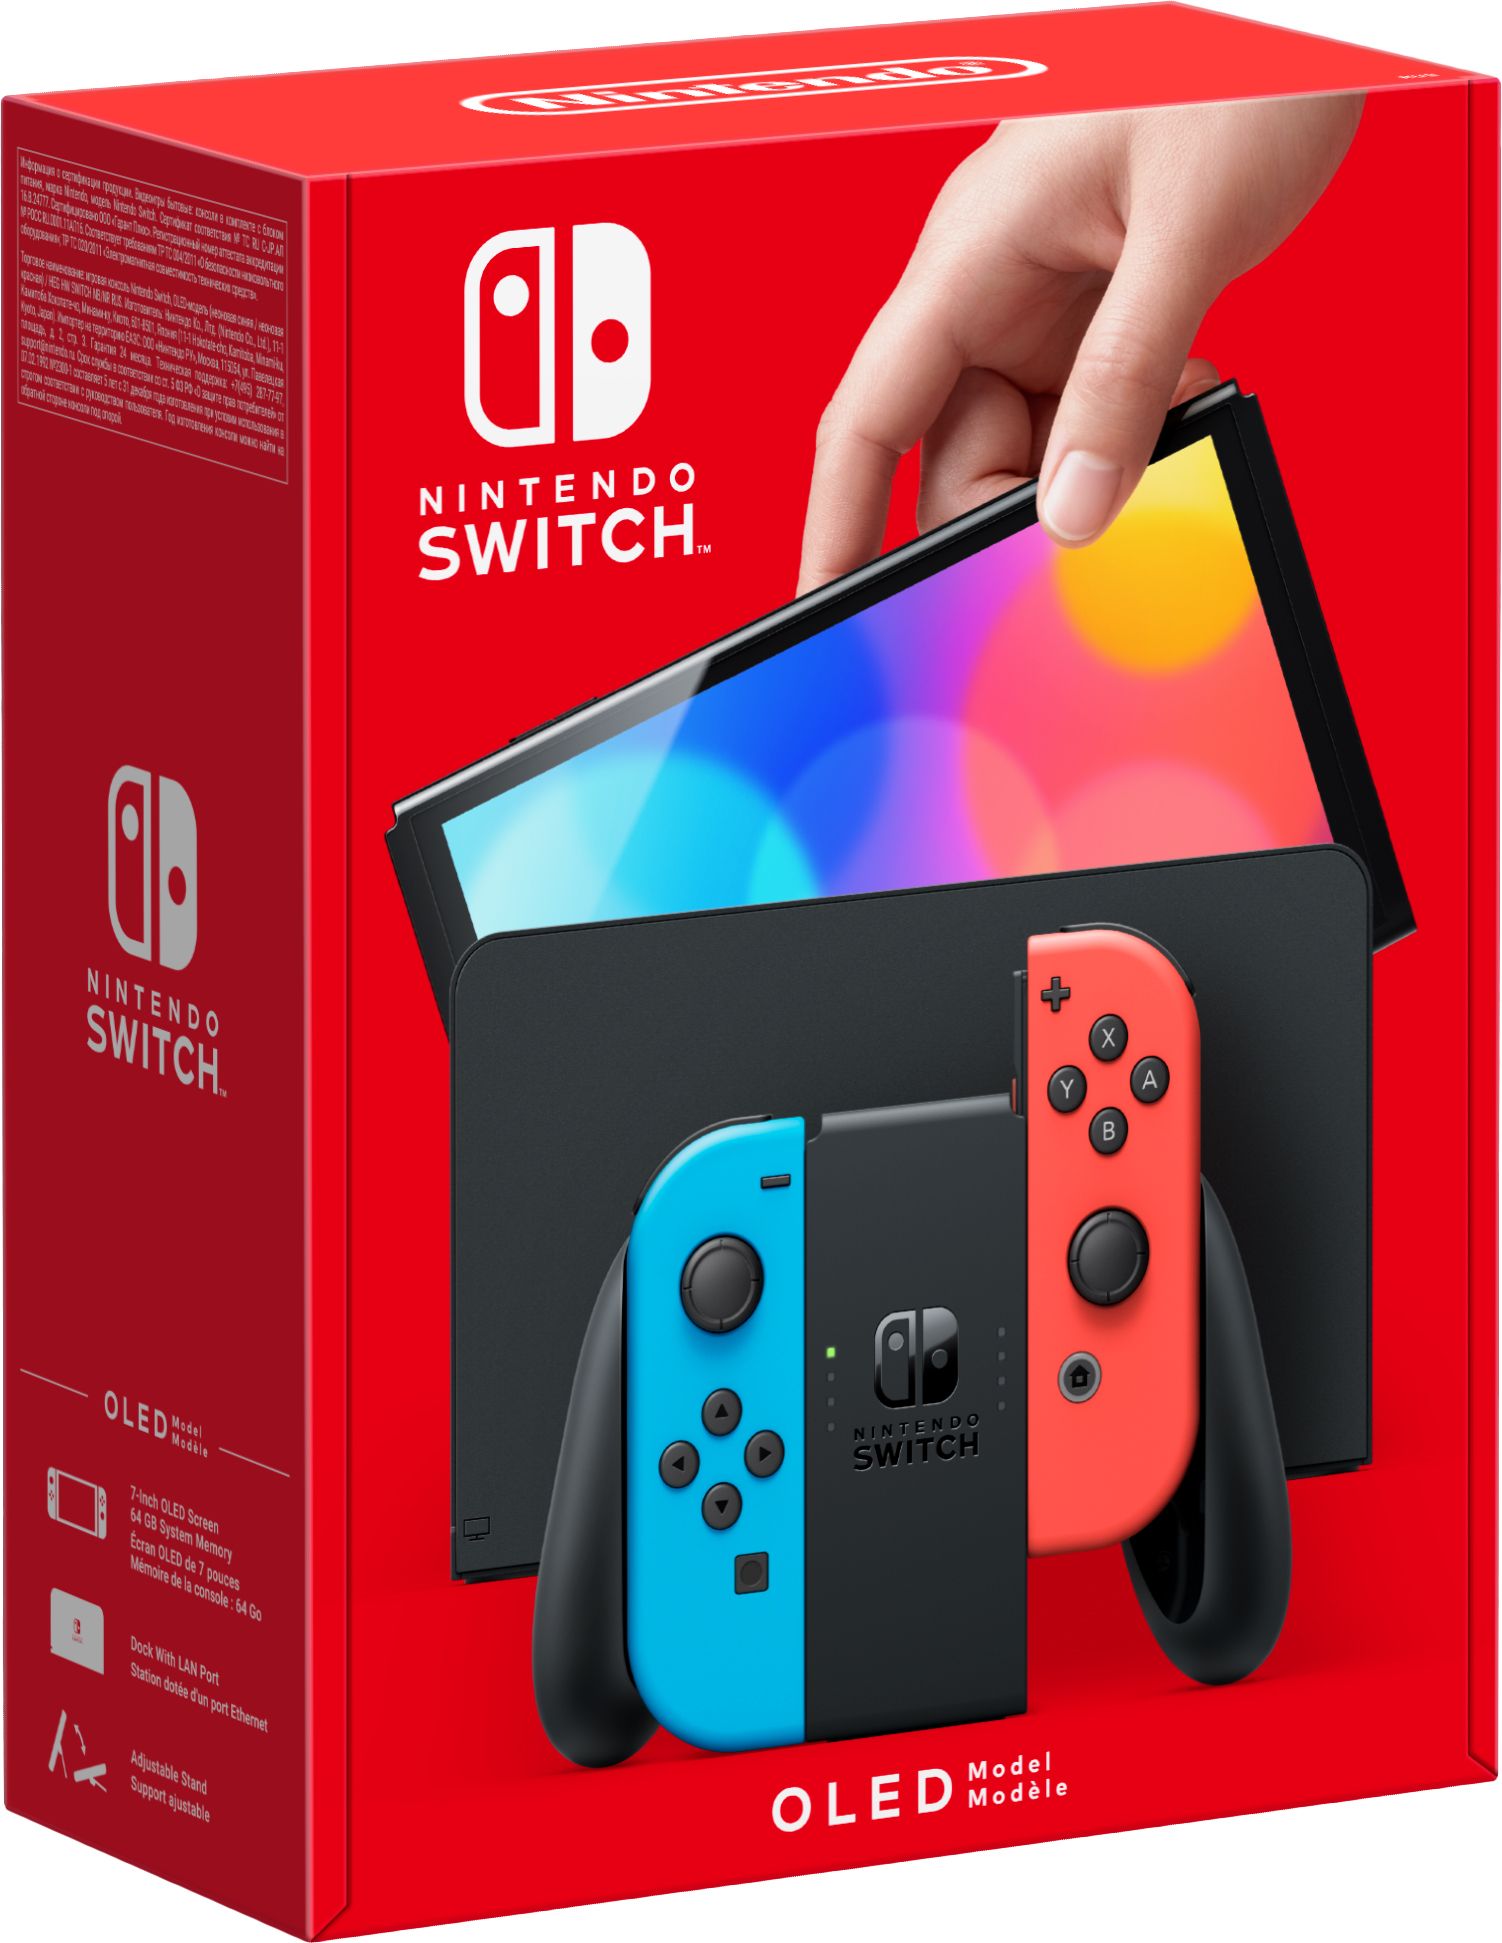 Nintendo Switch 32GB – Neon Red and Blue | 10010739 | ao.com